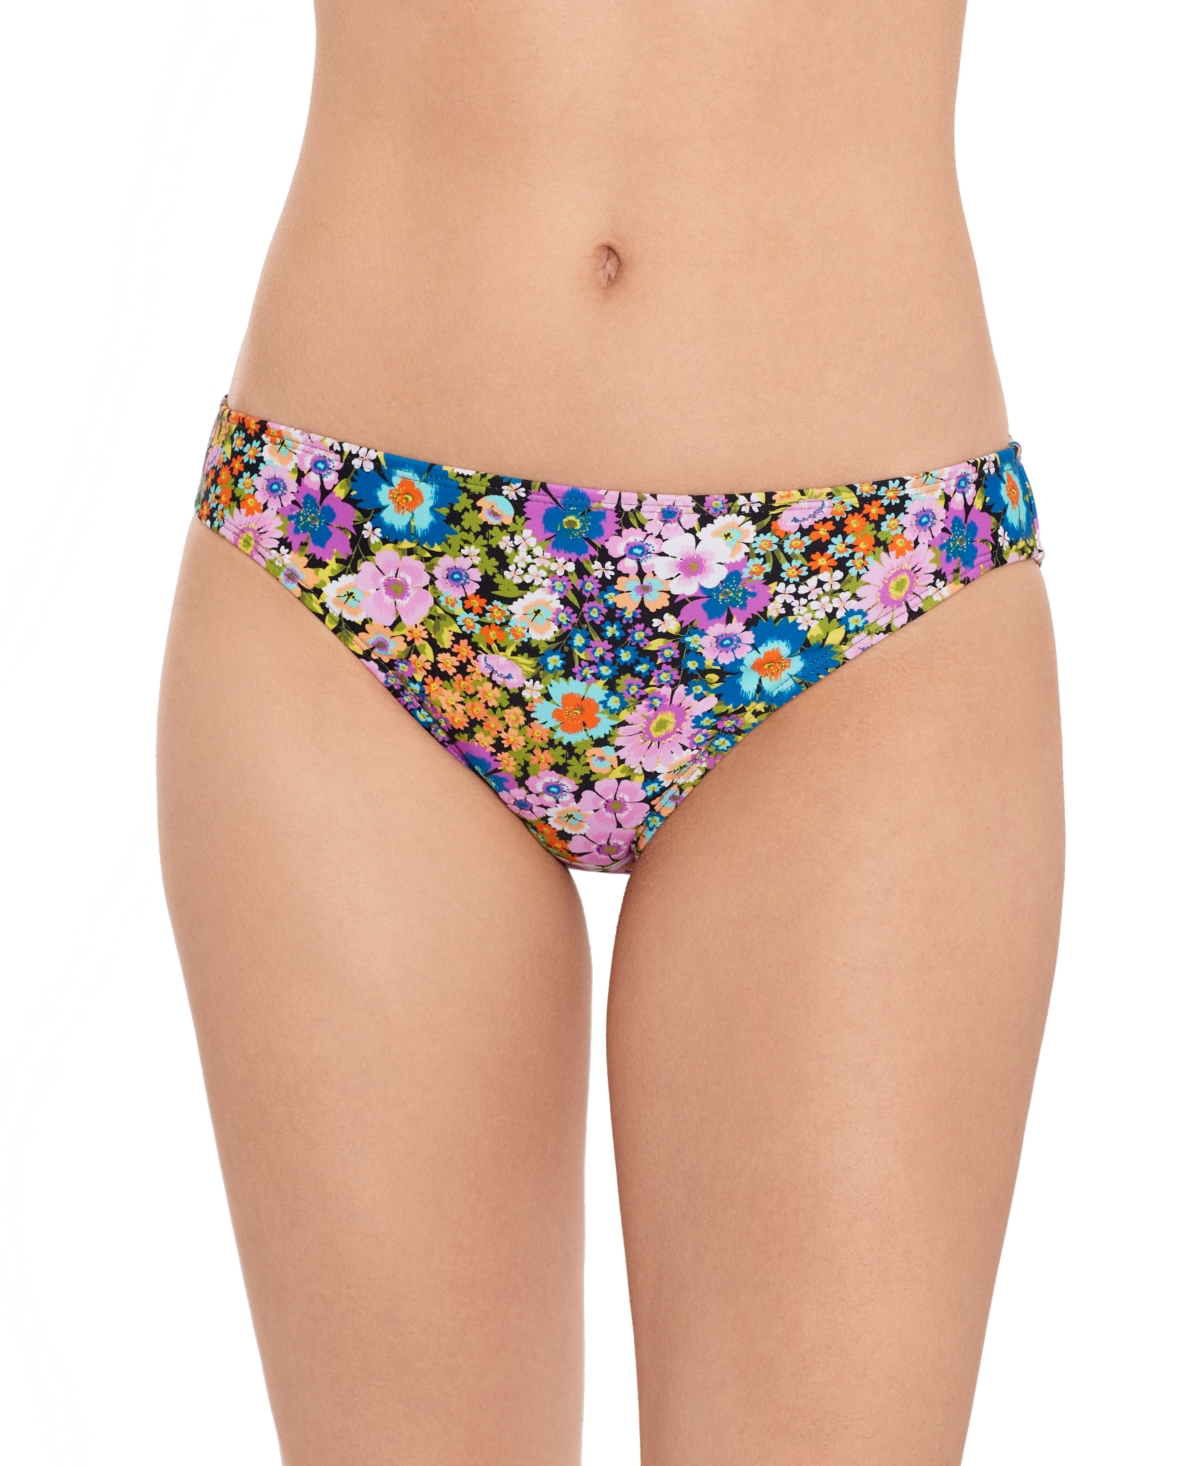 Women's Flower Burst Hipster Bikini Bottoms, Created for Macy's - Multi